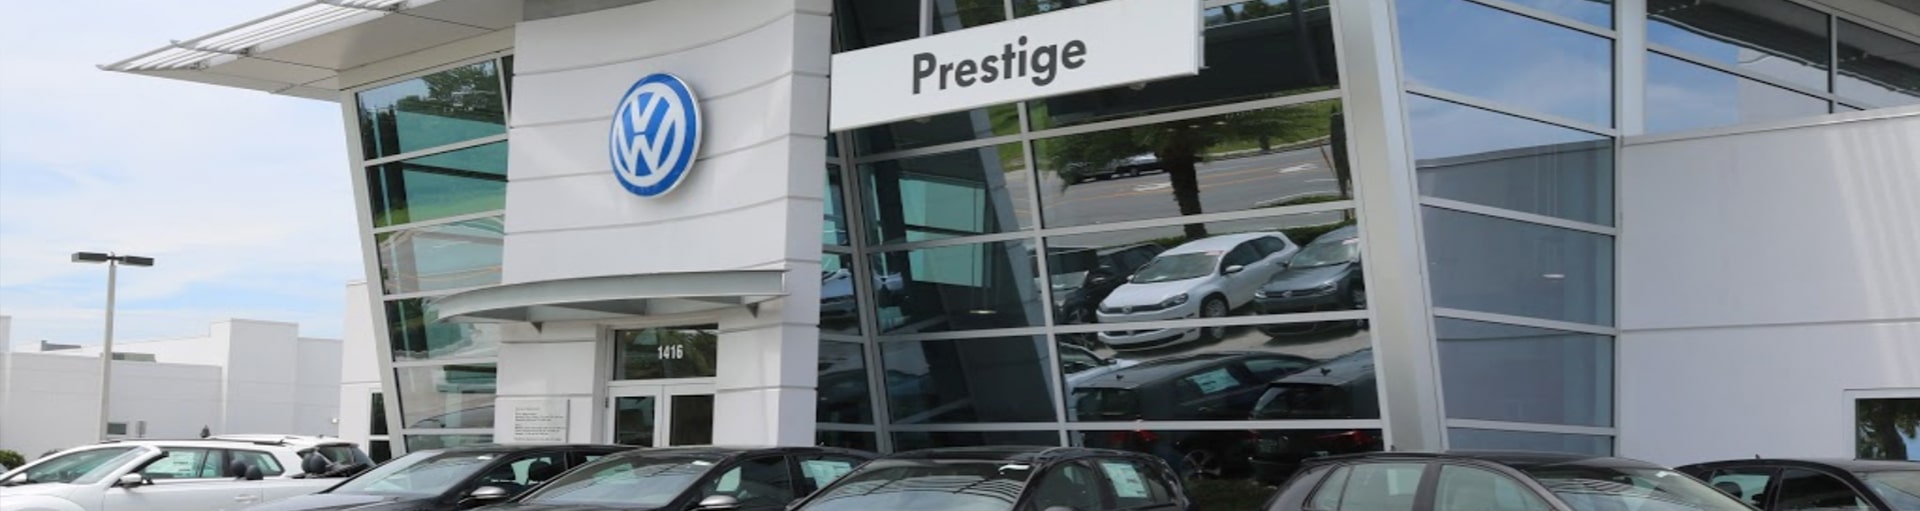 Prestige Volkswagen of Melbourne Coolant Fluid Exchange